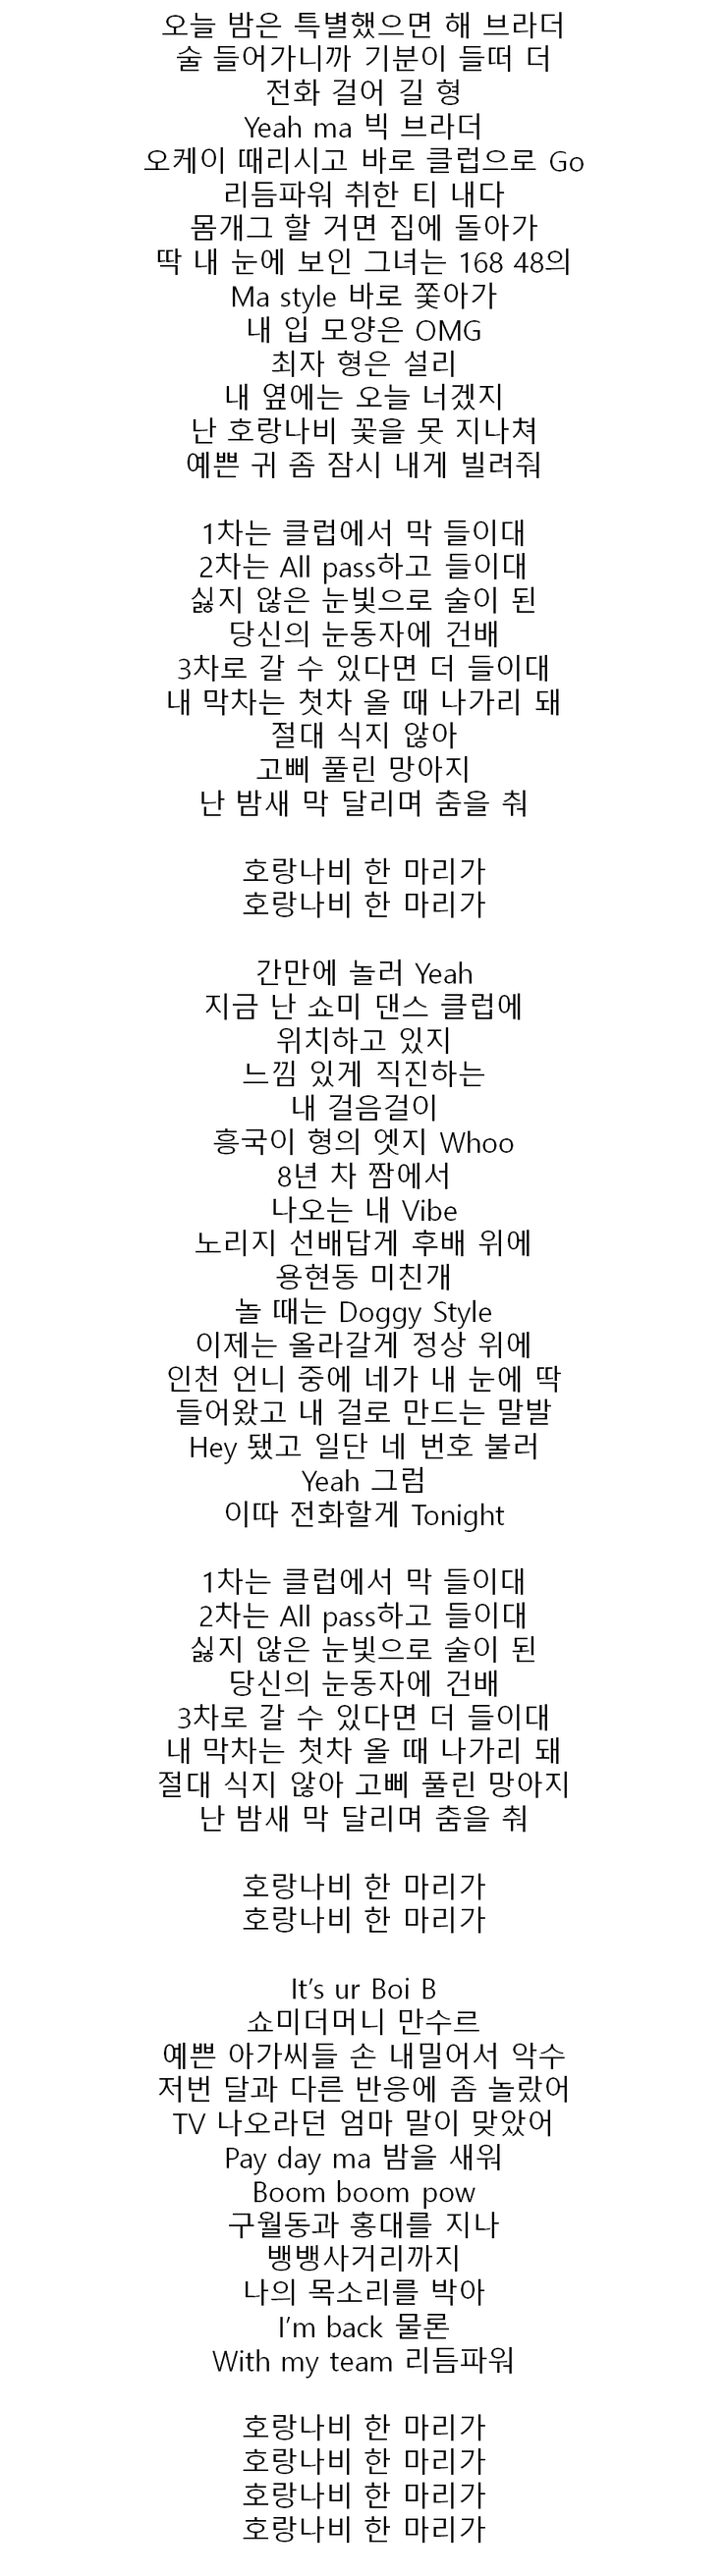 보이비 - 호랑나비(Feat. 길, 리듬파워) : 네이버 블로그